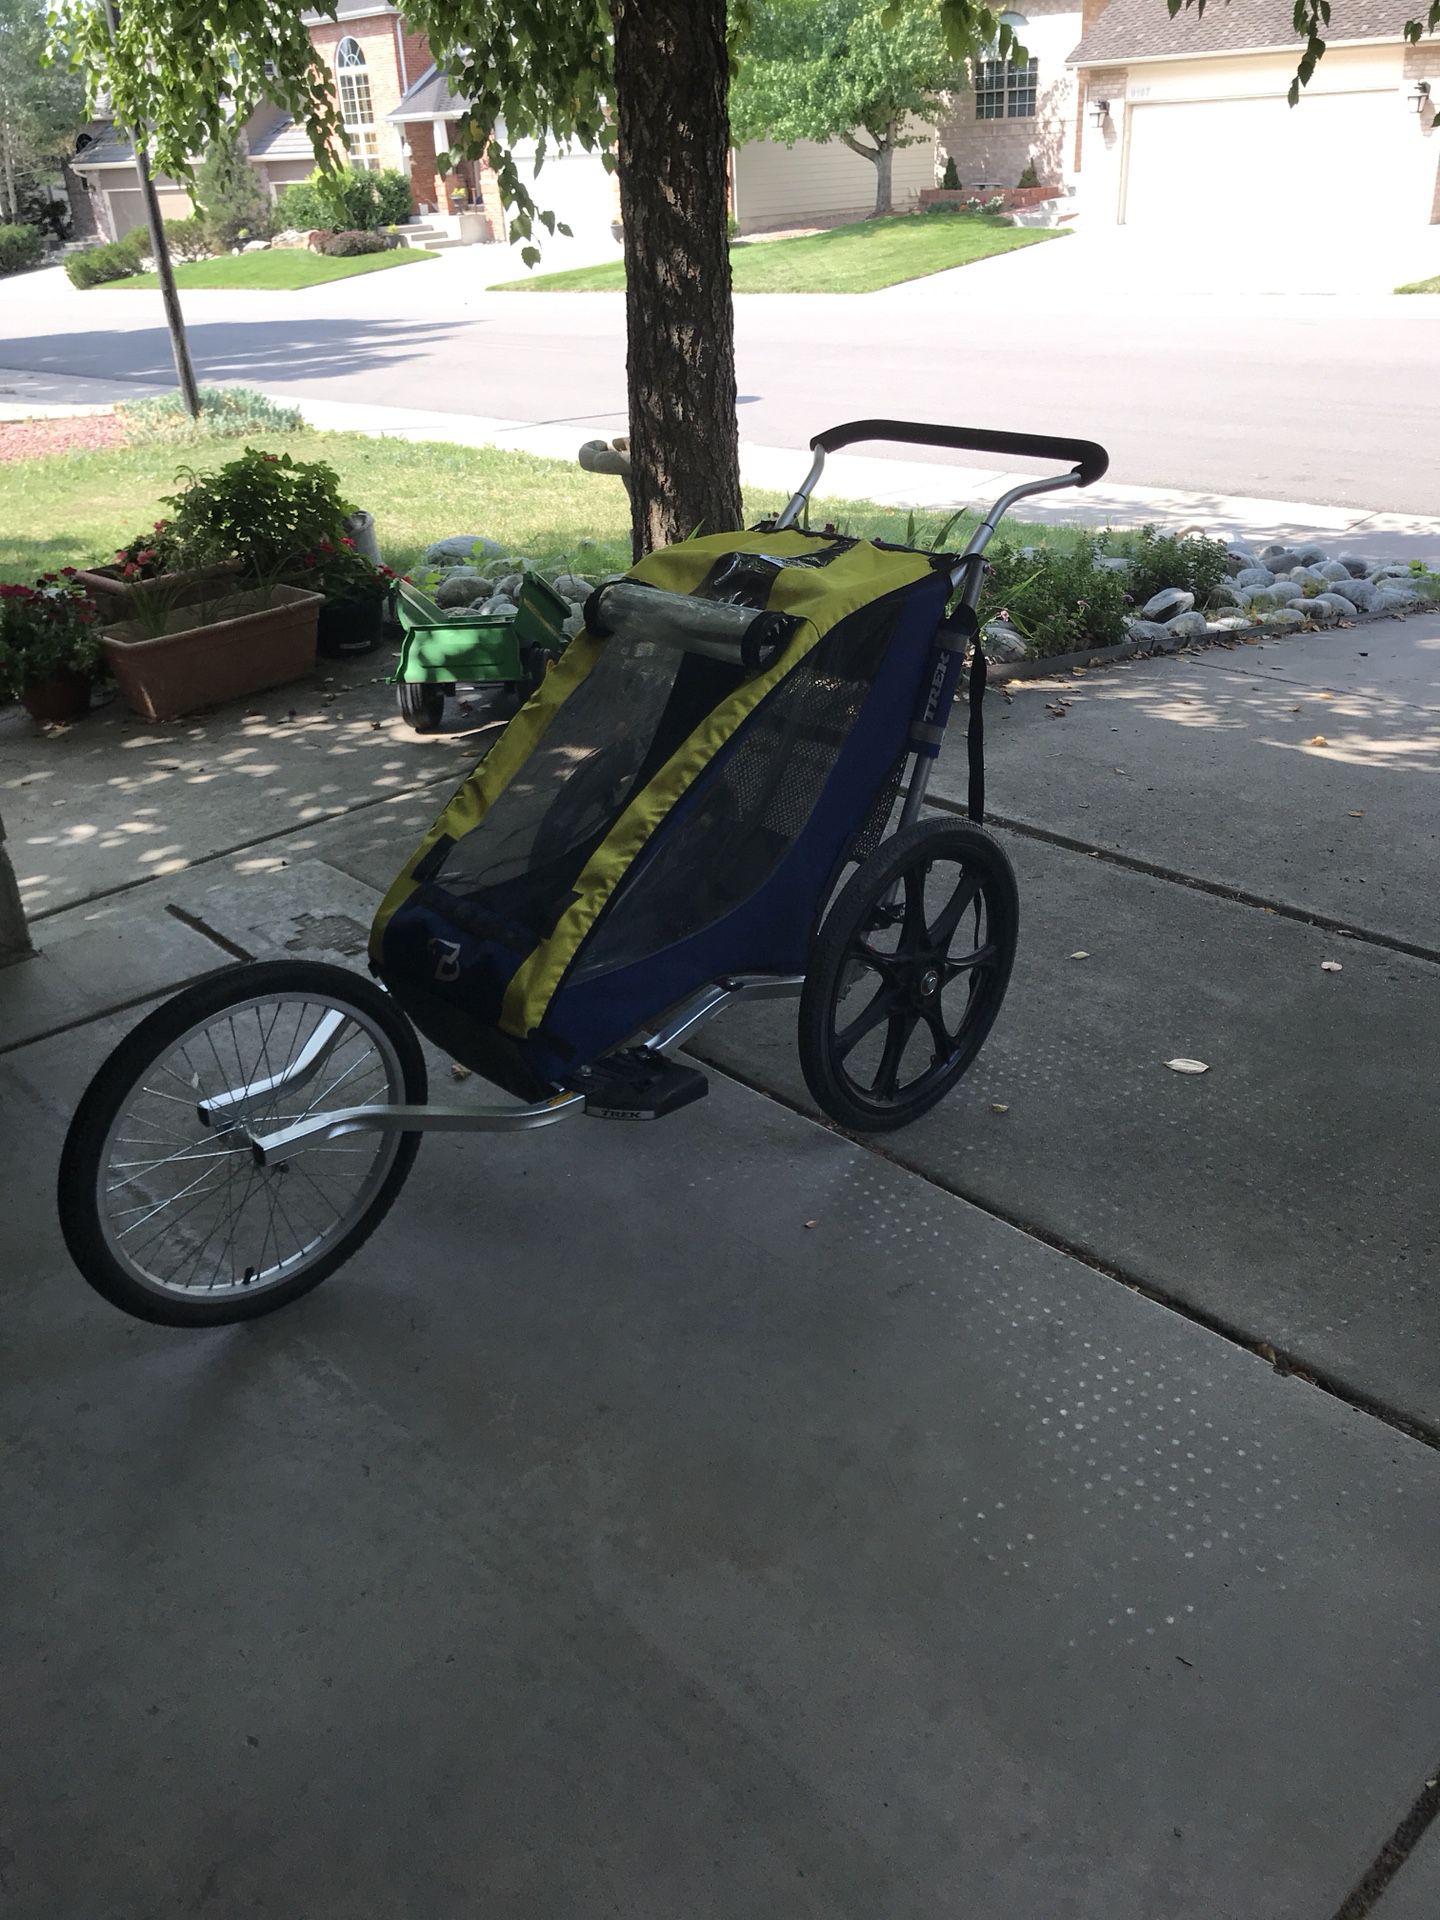 Trek bike trailer/jogging stroller